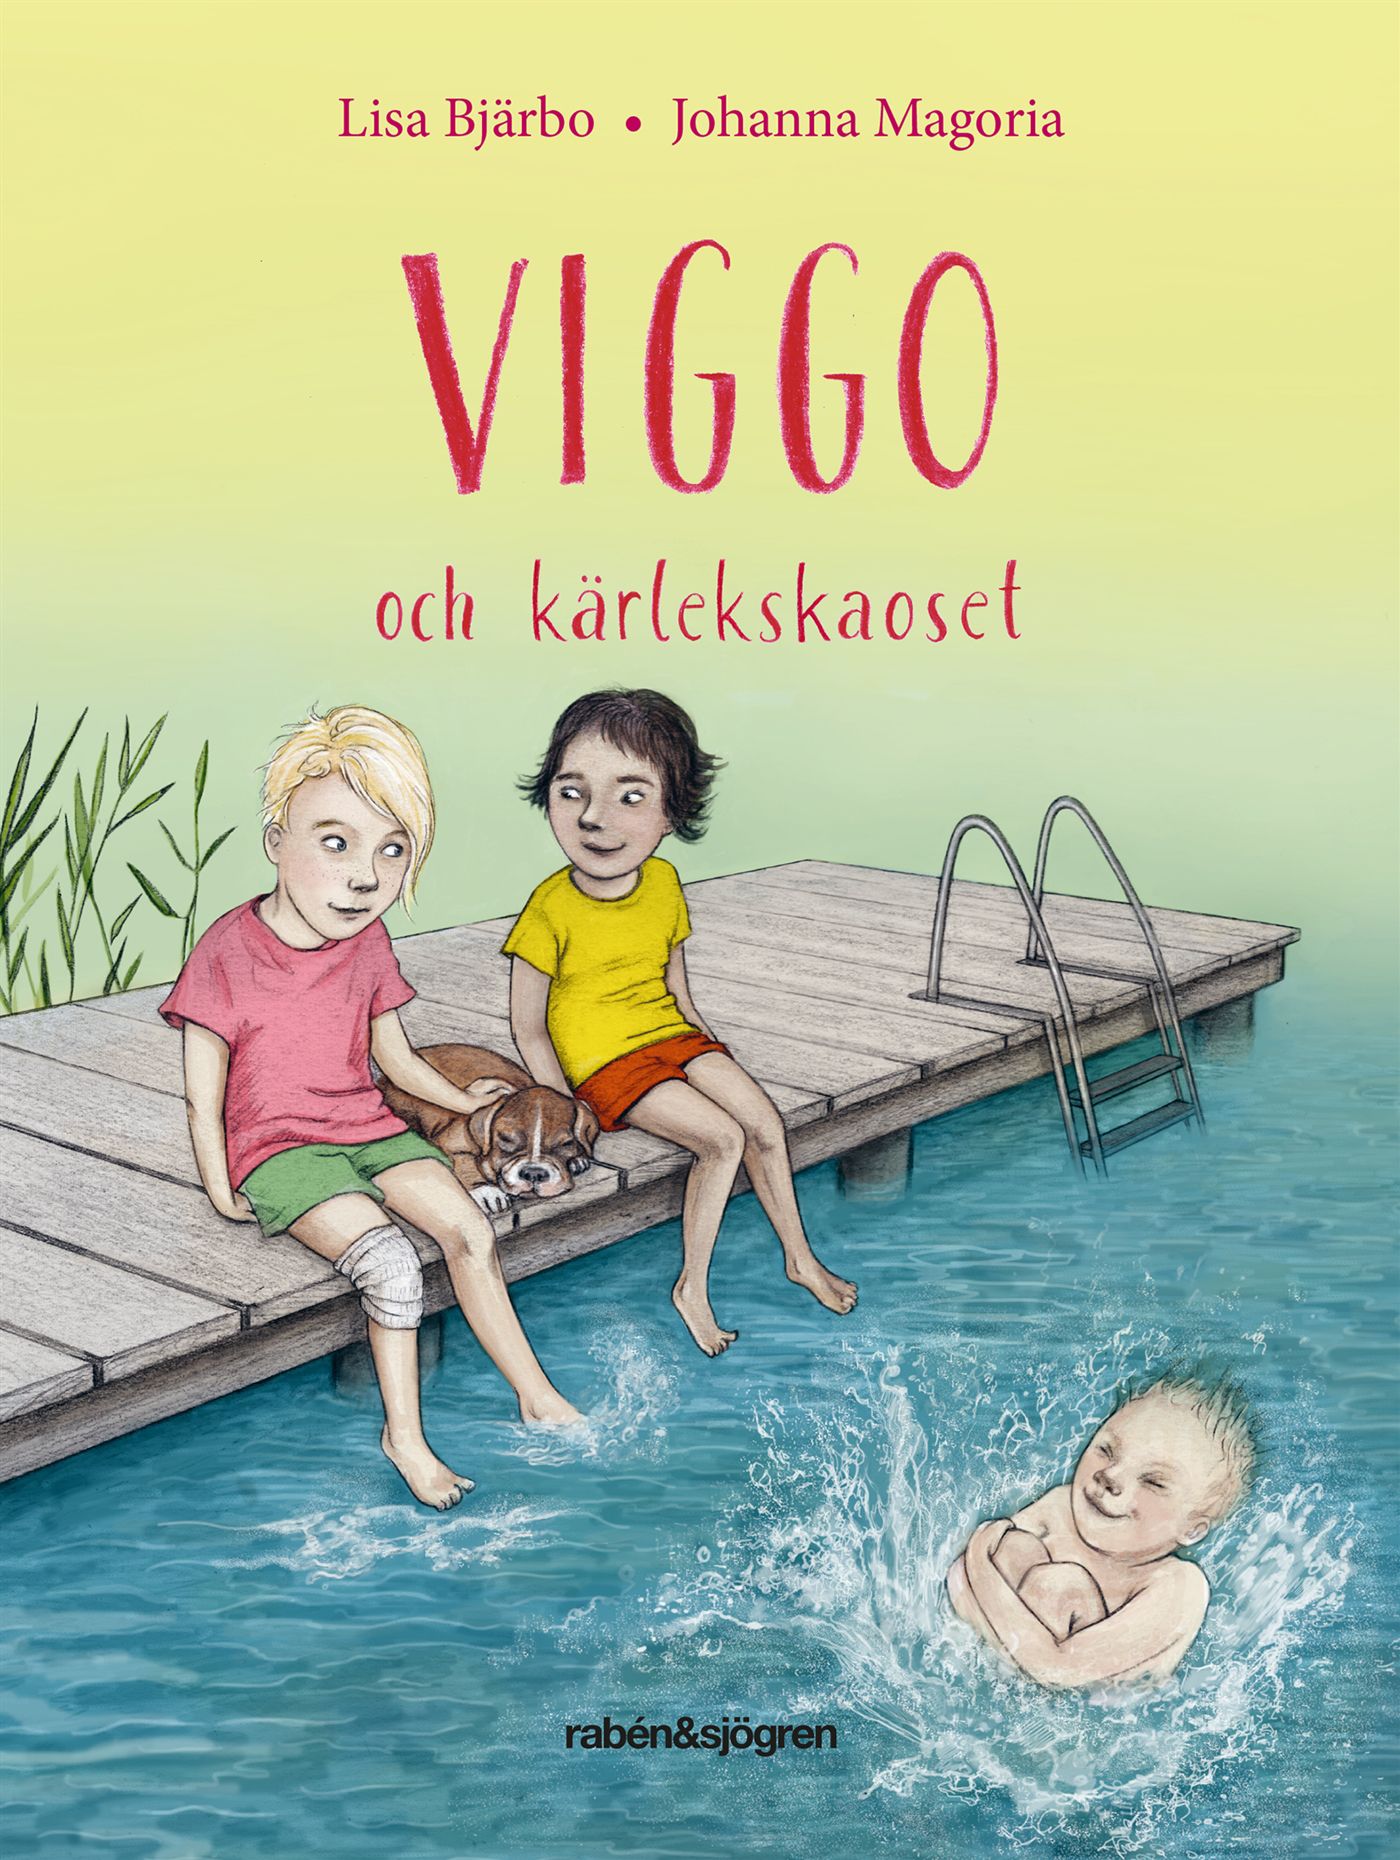 Viggo och kärlekskaoset, e-bok av Lisa Bjärbo